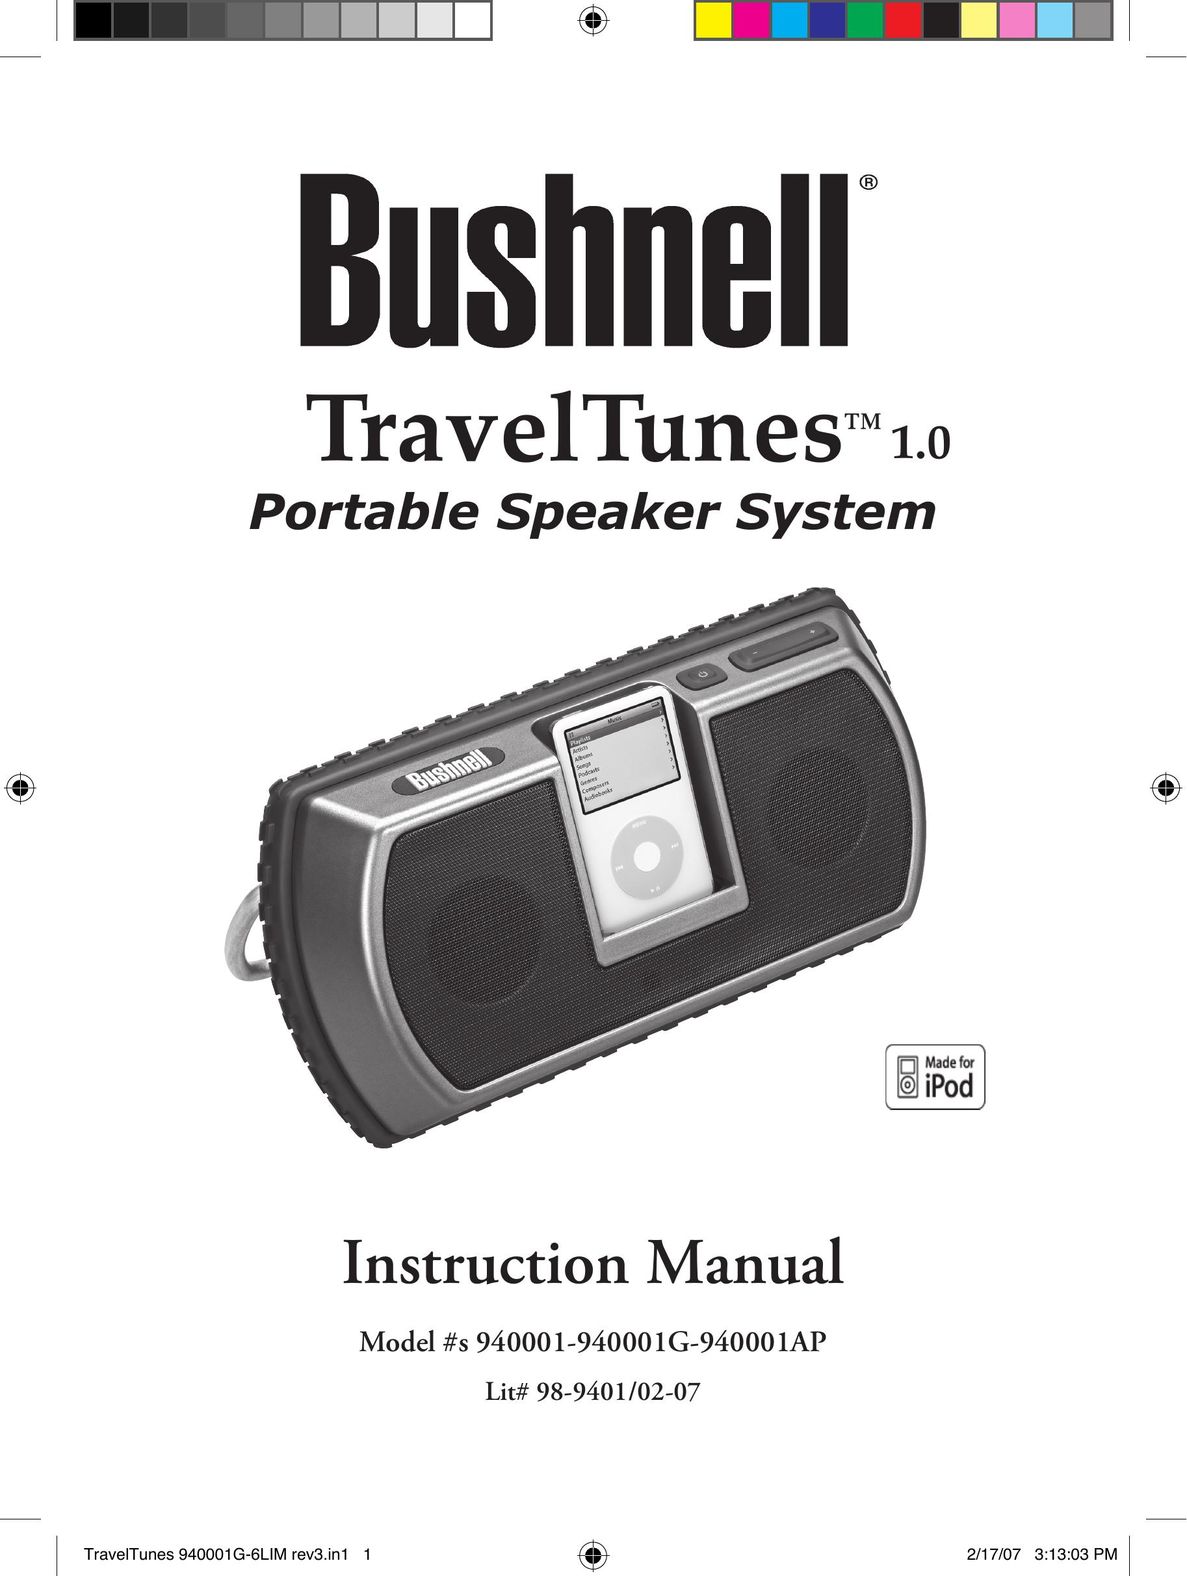 Bushnell 940001G Portable Speaker User Manual